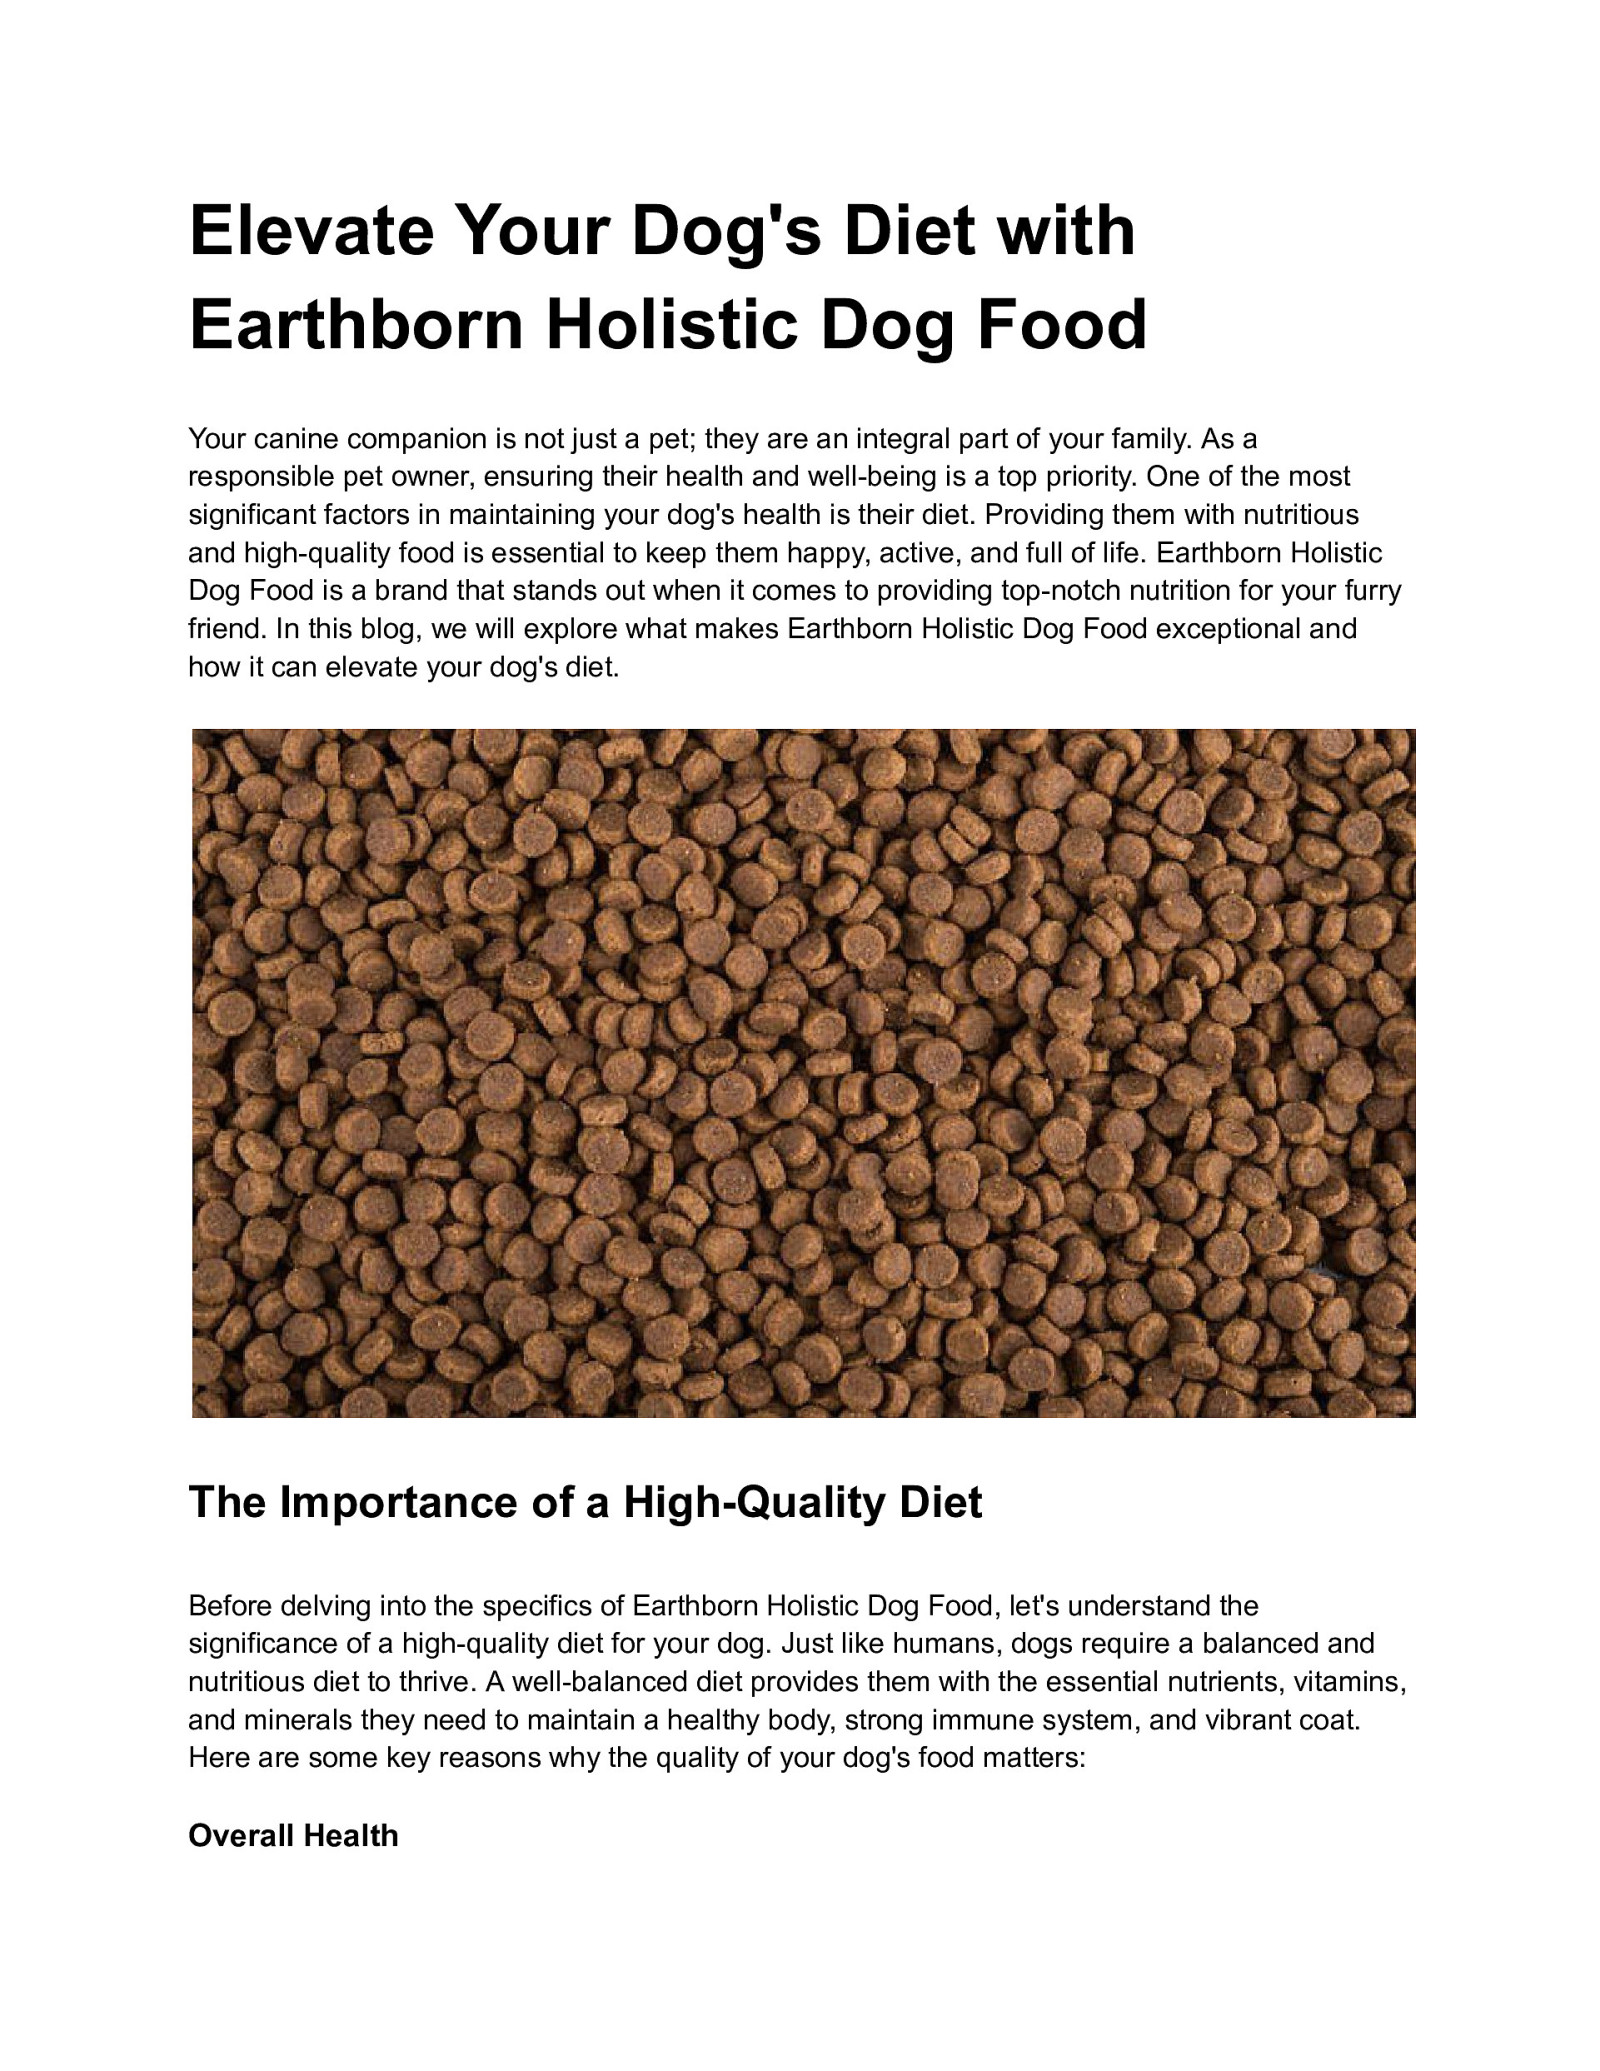 Earthborn Dog Food